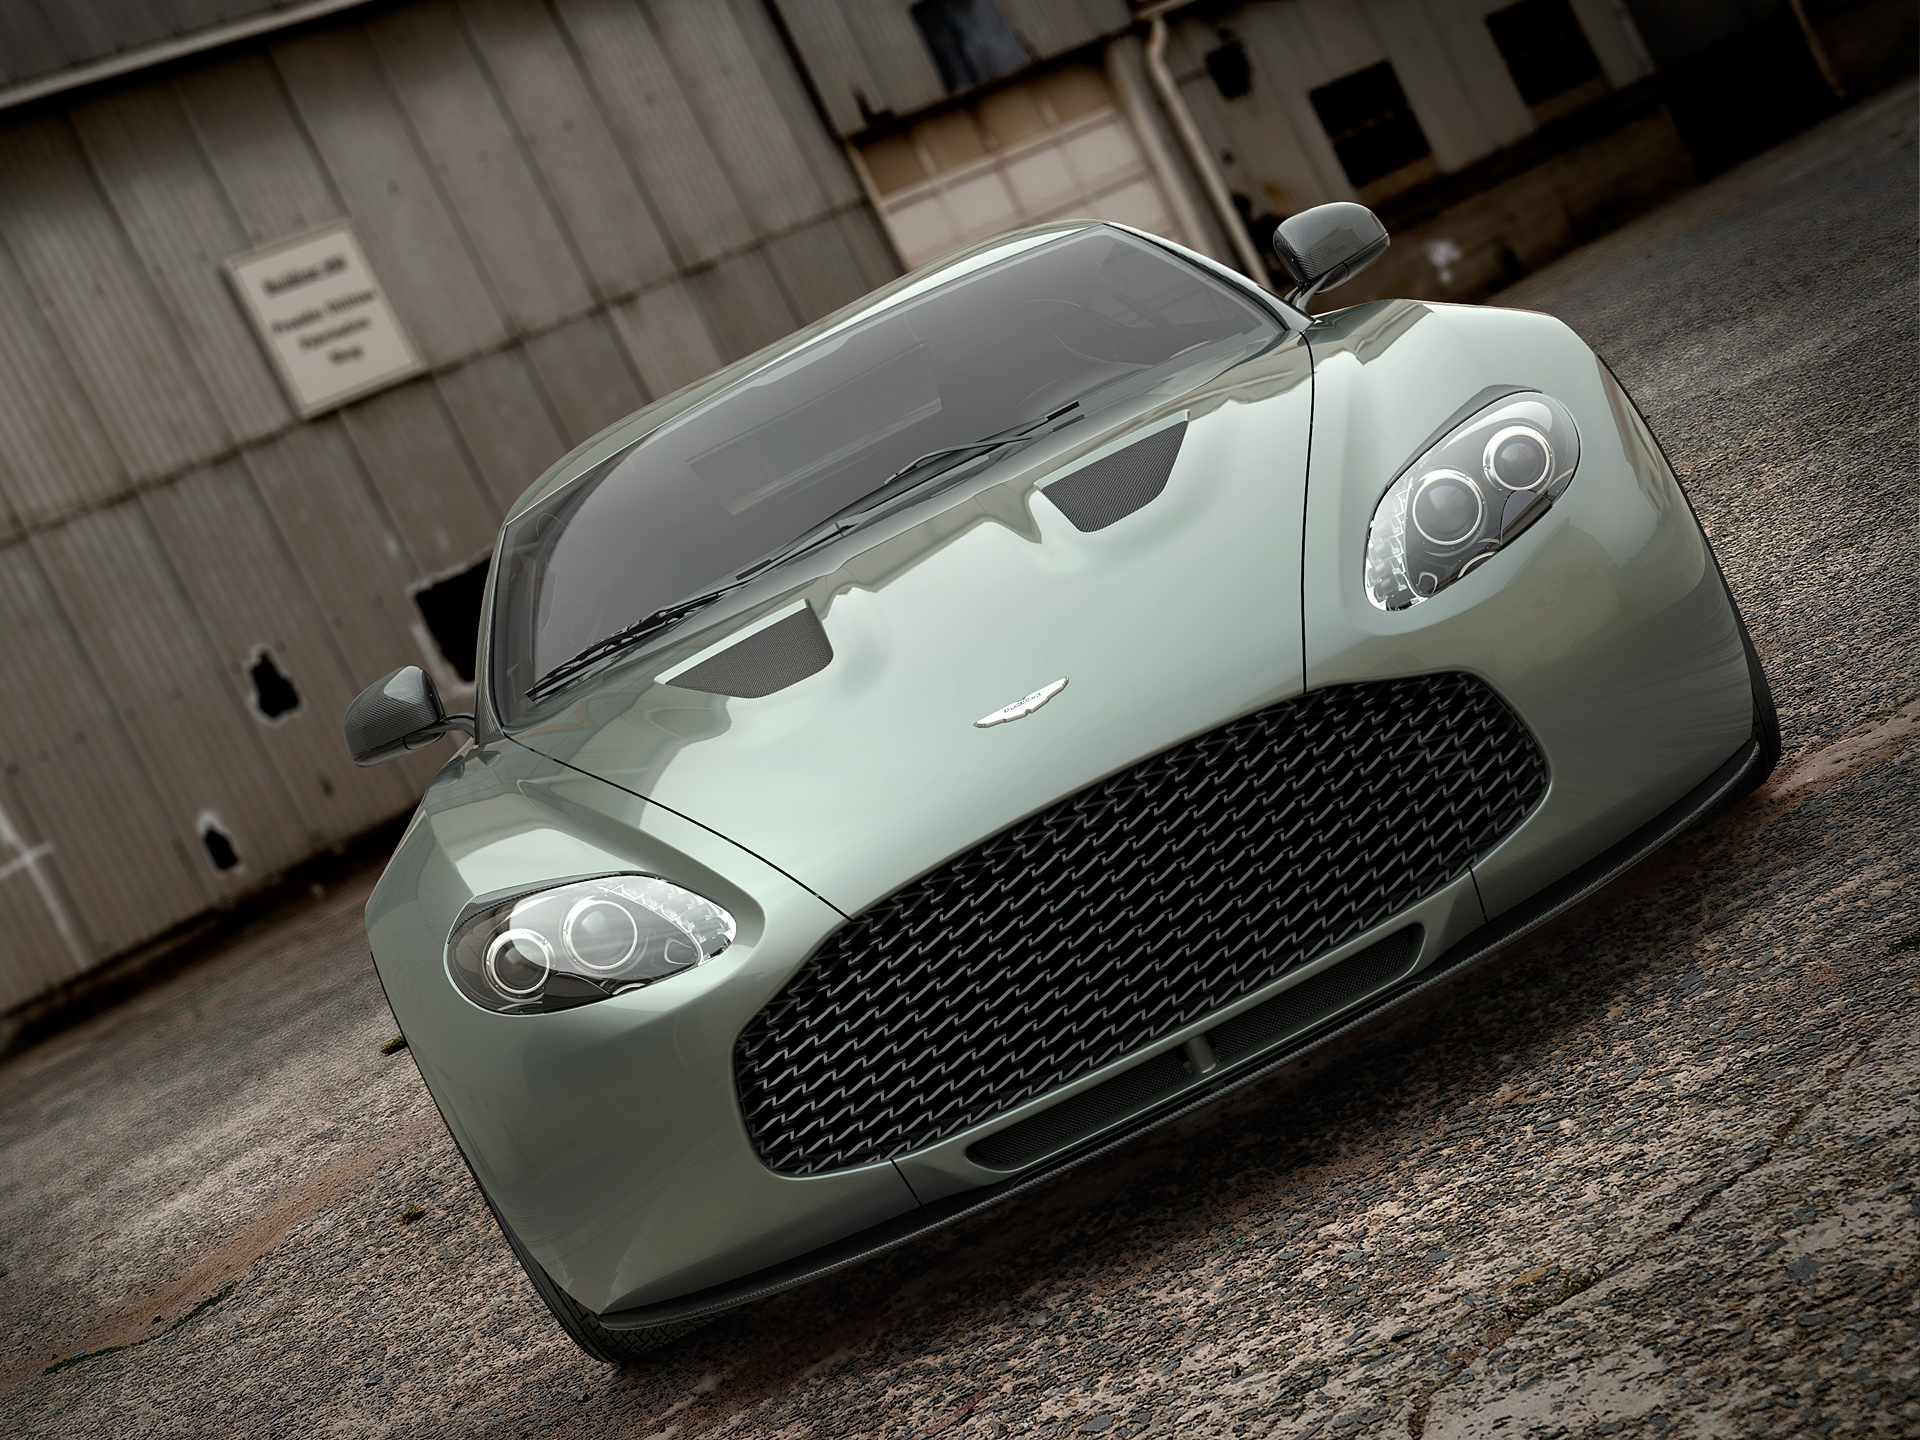 Vehicles Aston Martin V12 Zagato HD Wallpaper | Background Image